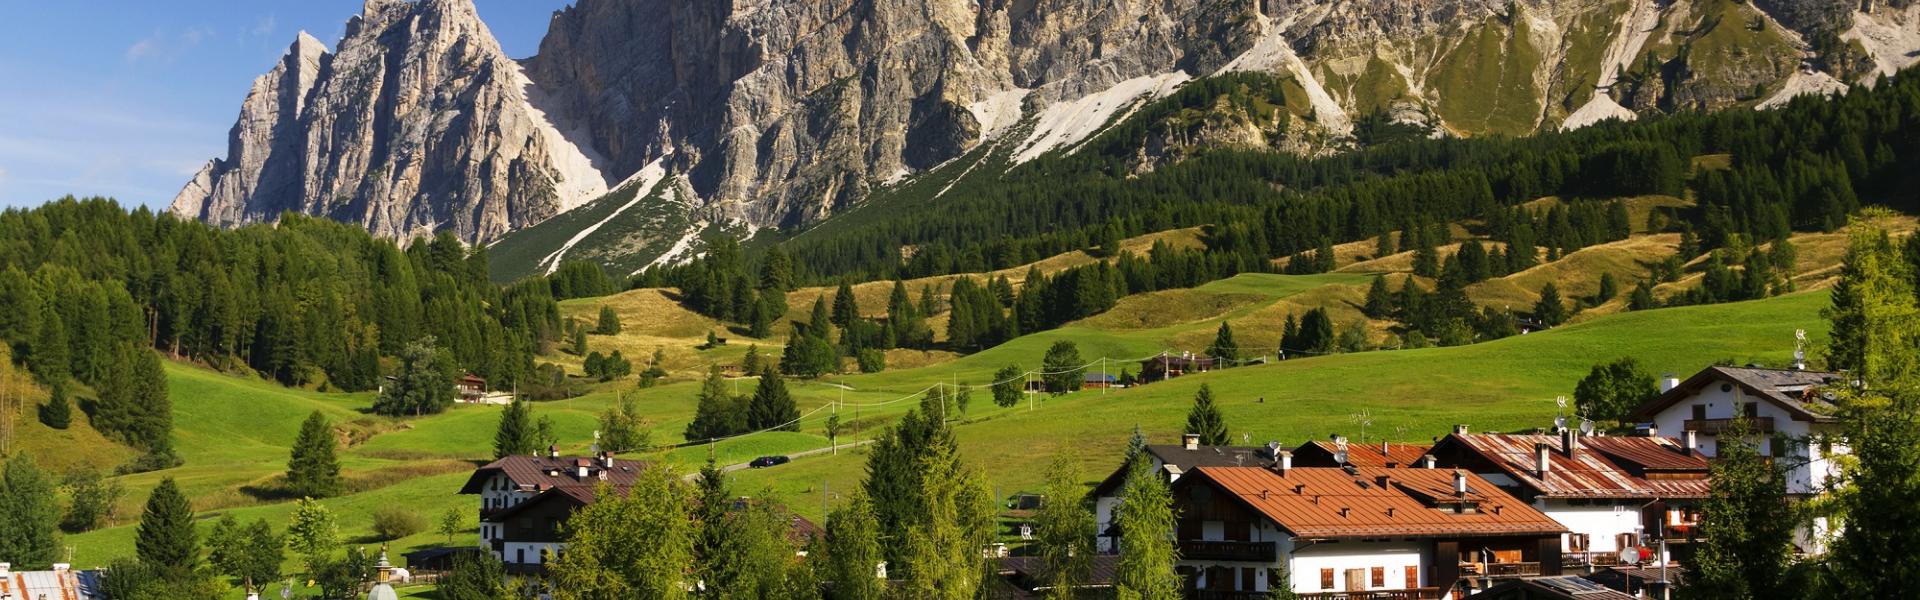 Appartamenti e case vacanze a Cortina d'Ampezzo in affitto - CaseVacanza.it